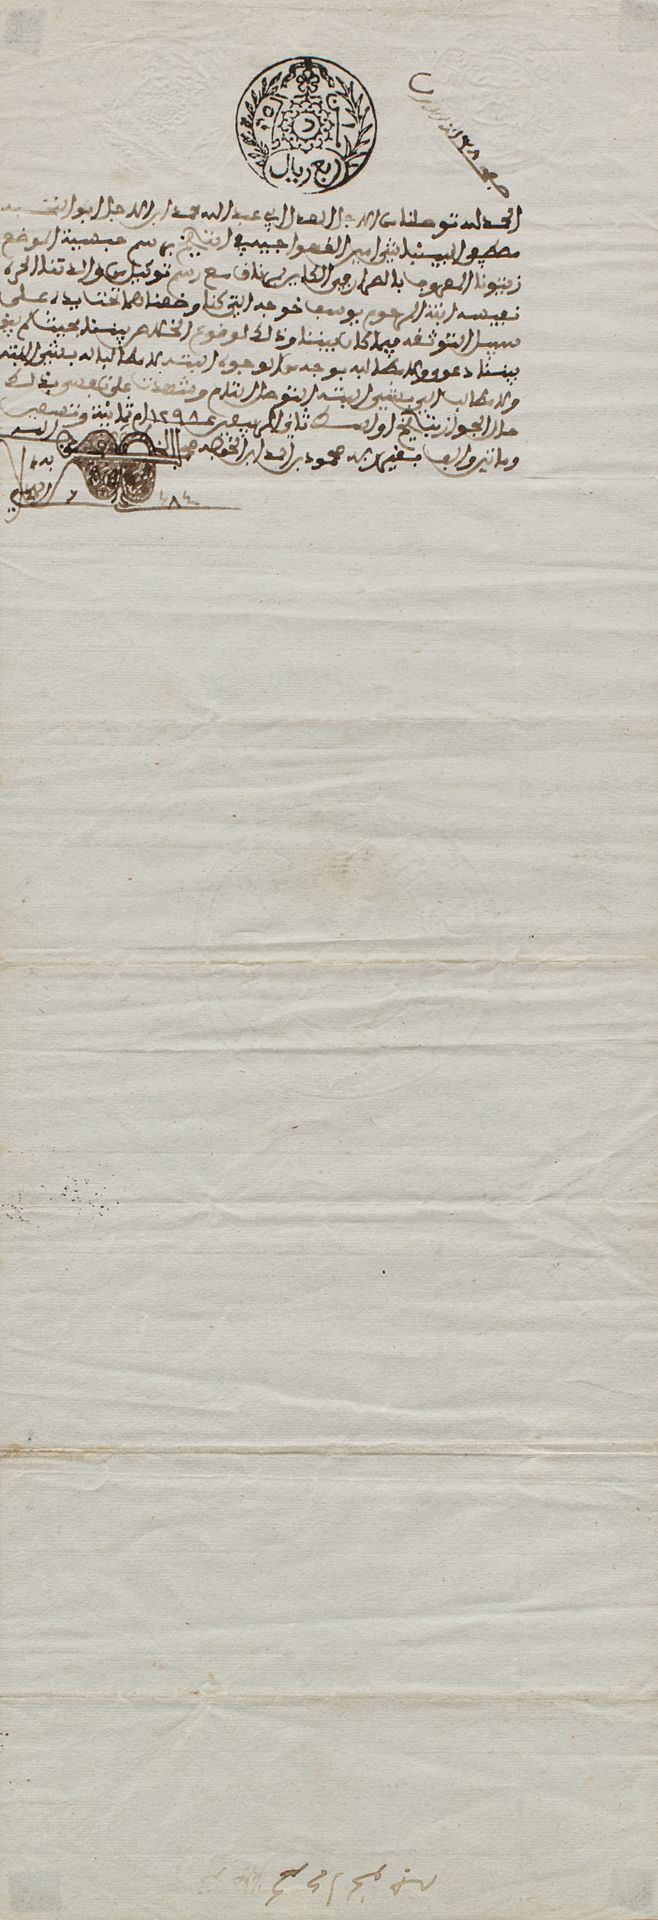 Contrat de vente Tunisia, fine del XIX secolo

Manoscritto arabo su carta filigr&hellip;